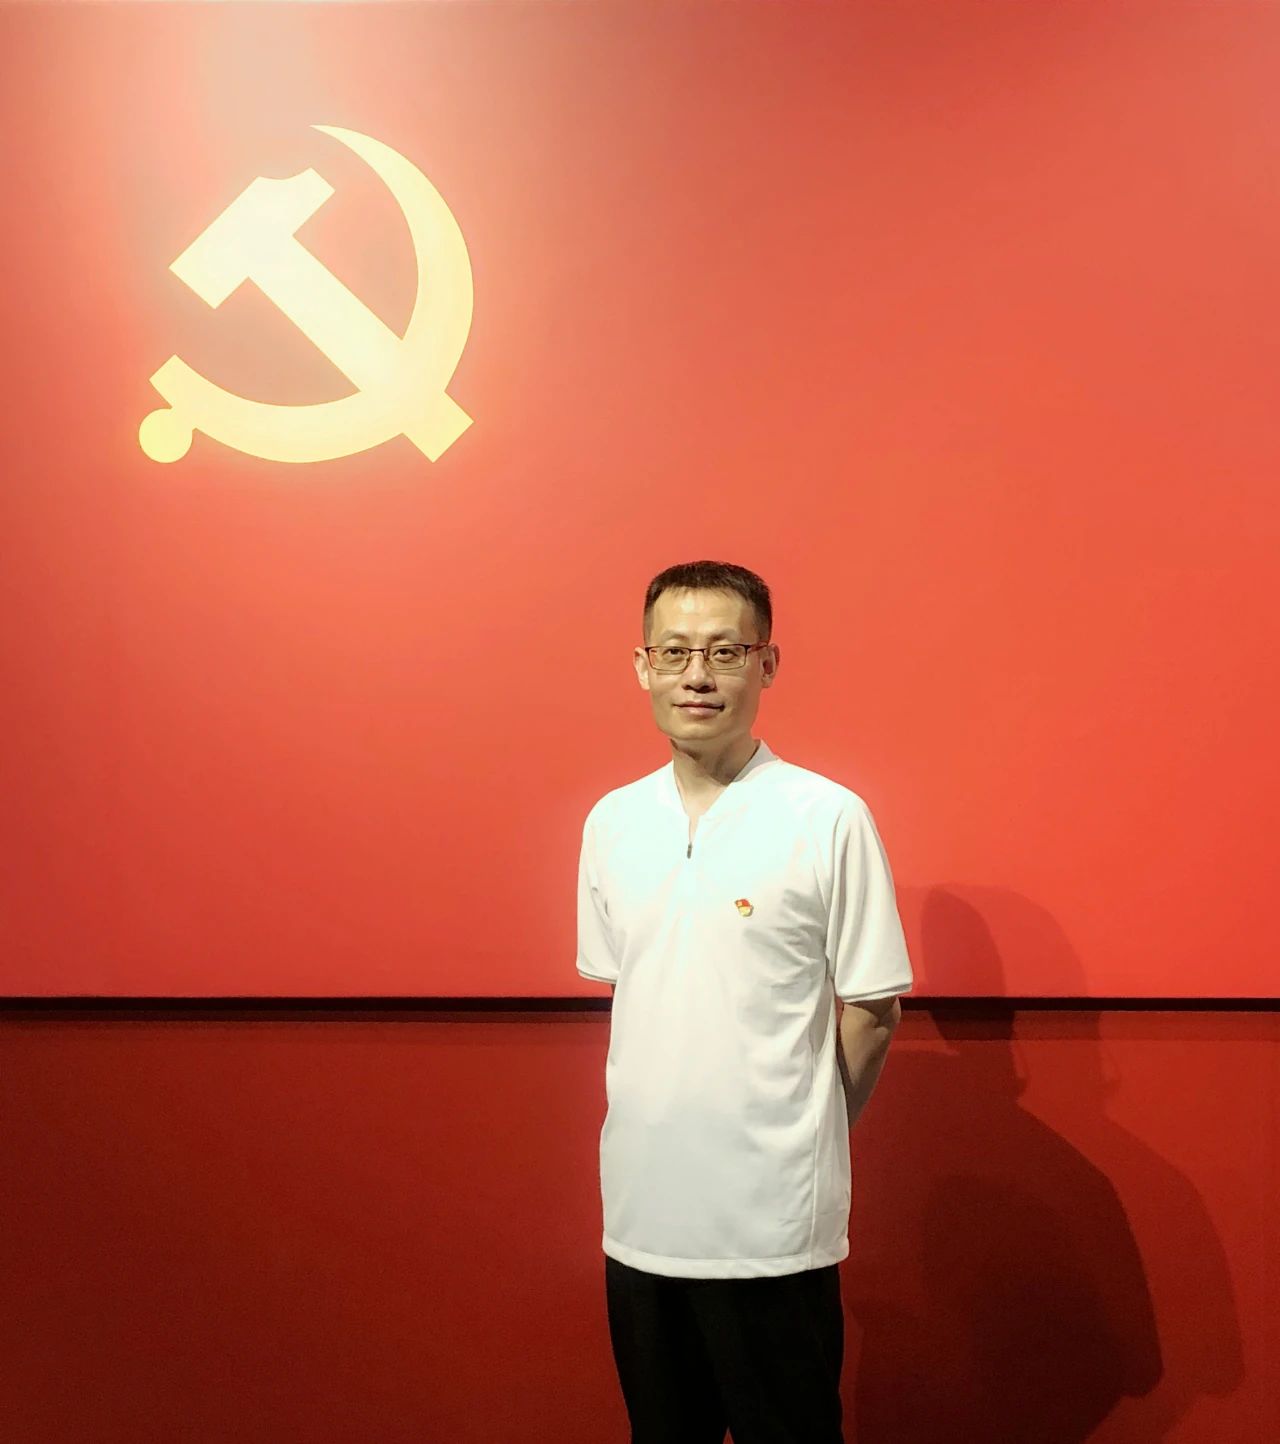 永远跟党走，参观「百年航程 · 赤子侨心——庆祝中国共产党成立 100 周年主题展」